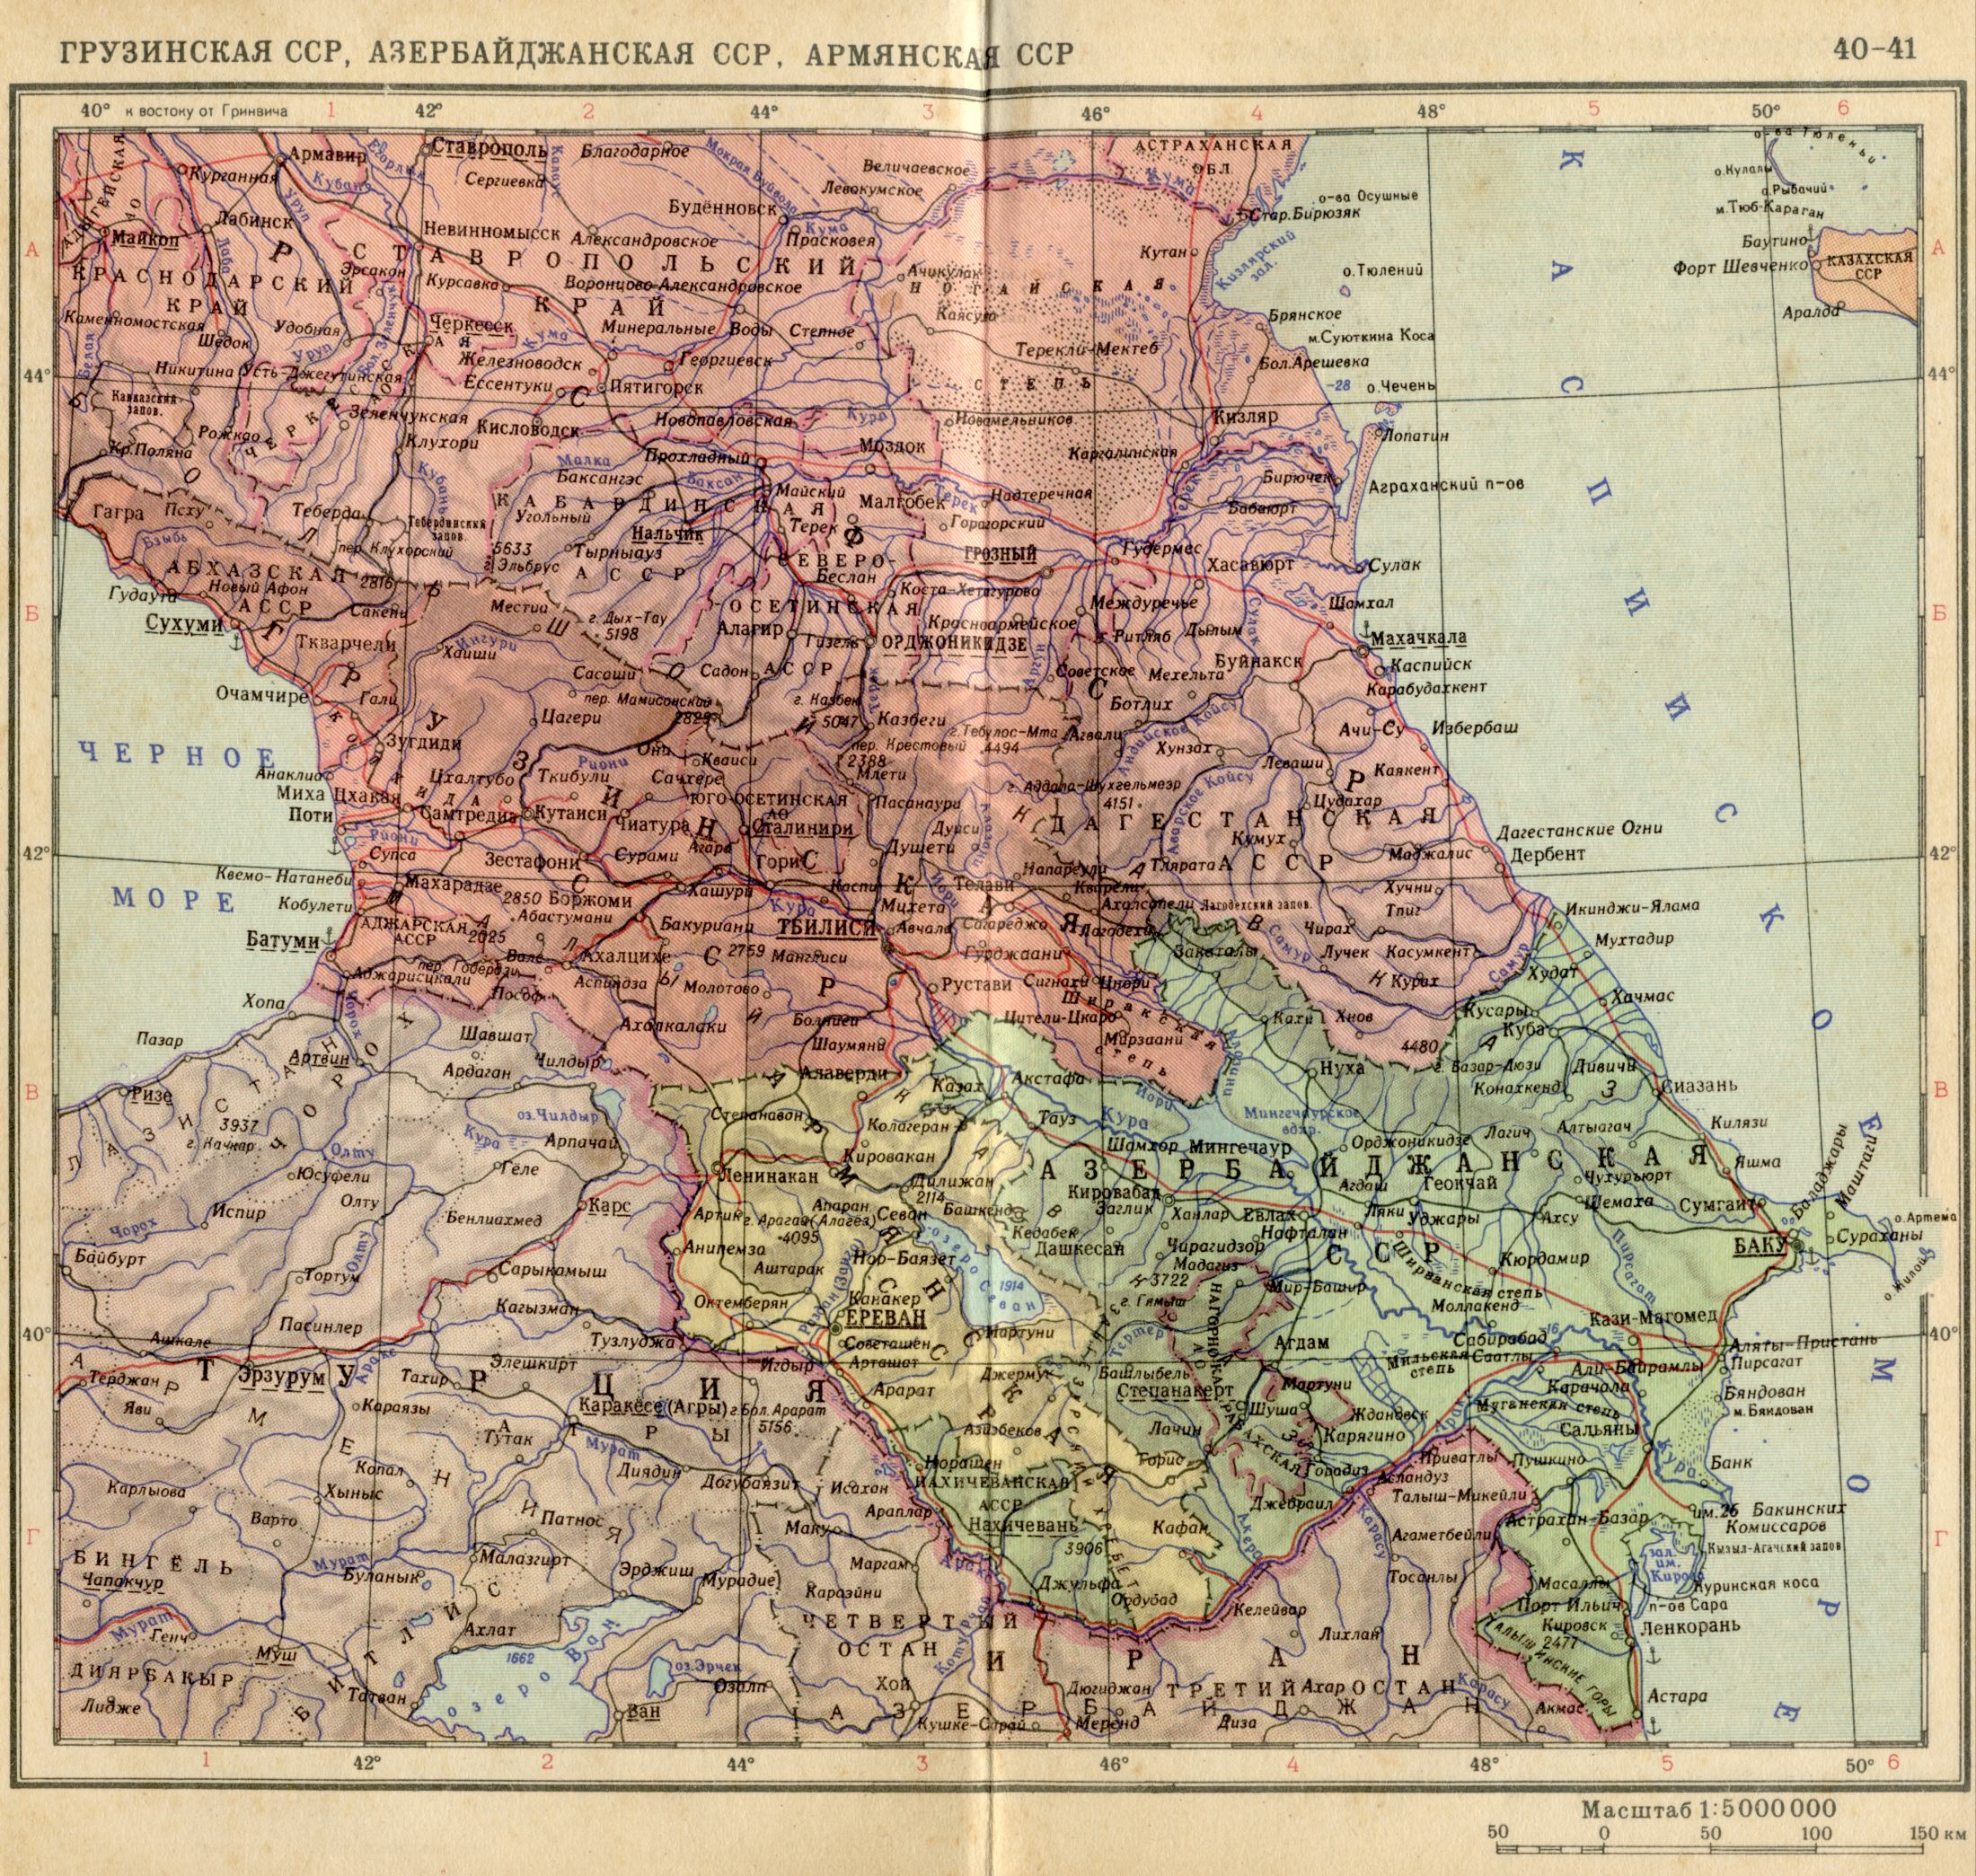 1956. Die politische Landkarte der Welt. Georgische SSR, Armenian SSR, Aserbaidschan SSR 1956. Laden Sie eine detaillierte Karte